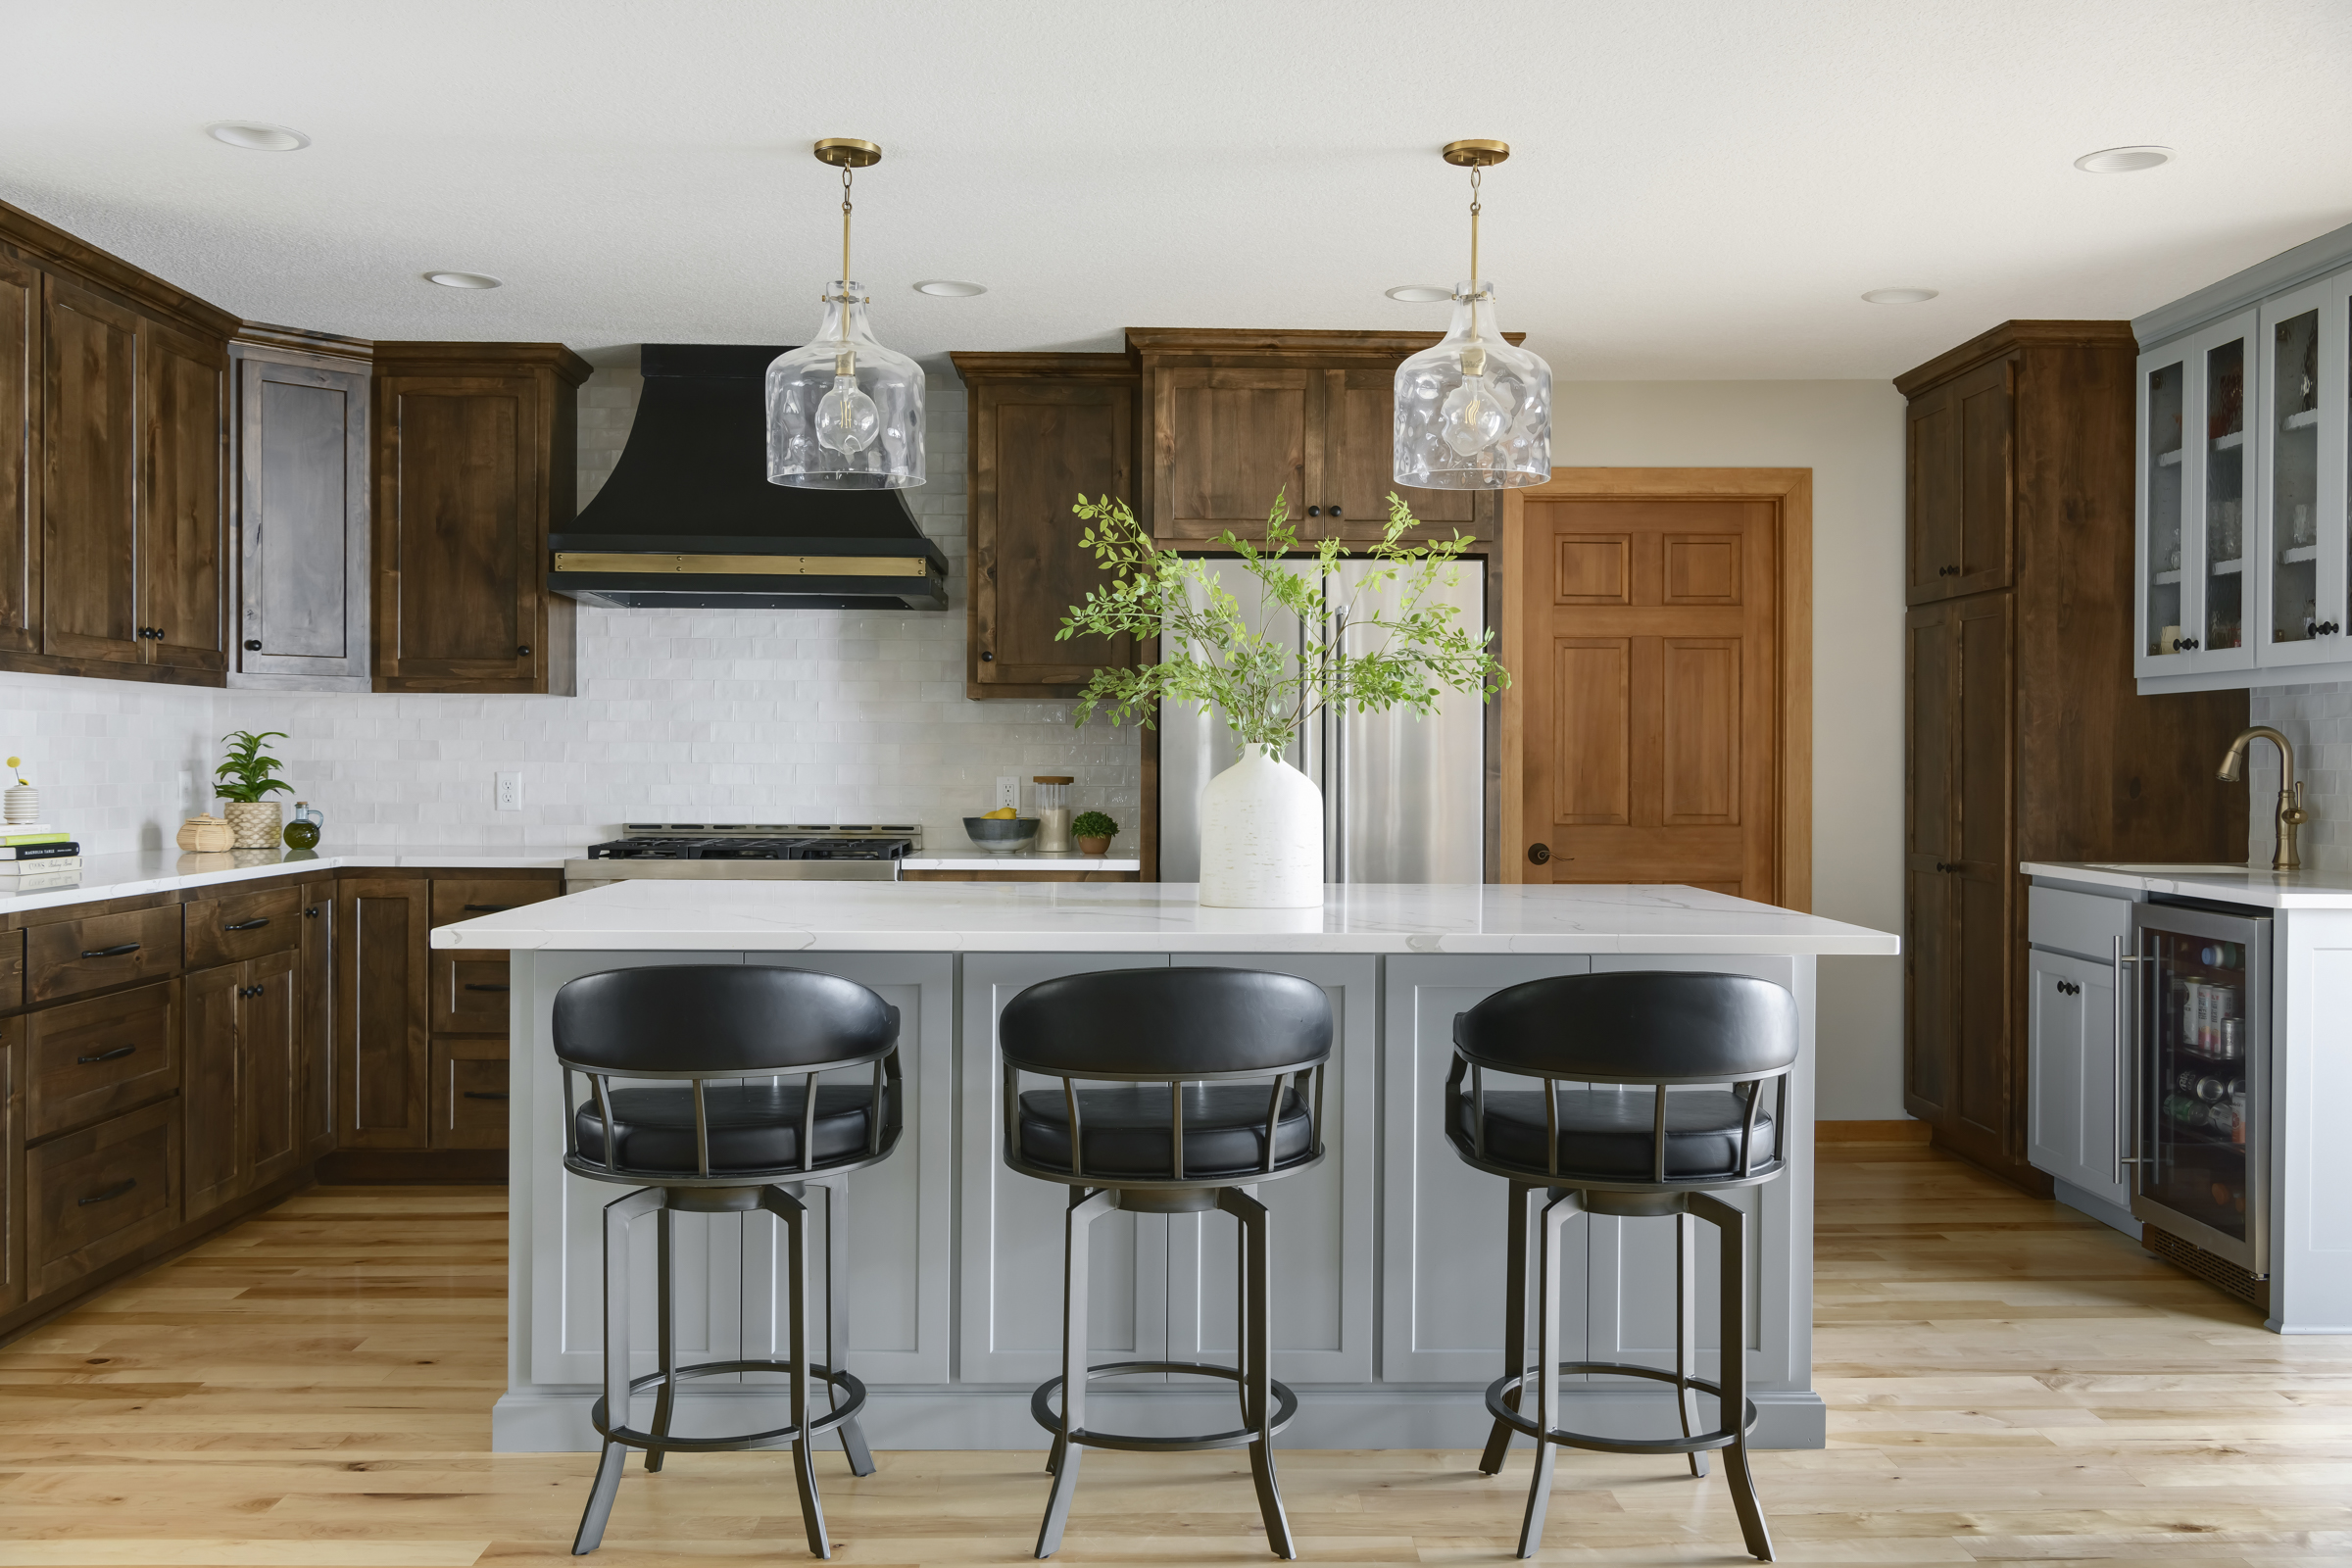 Northfield, MN Kitchen Remodel by Design-Build firm, White Birch Design